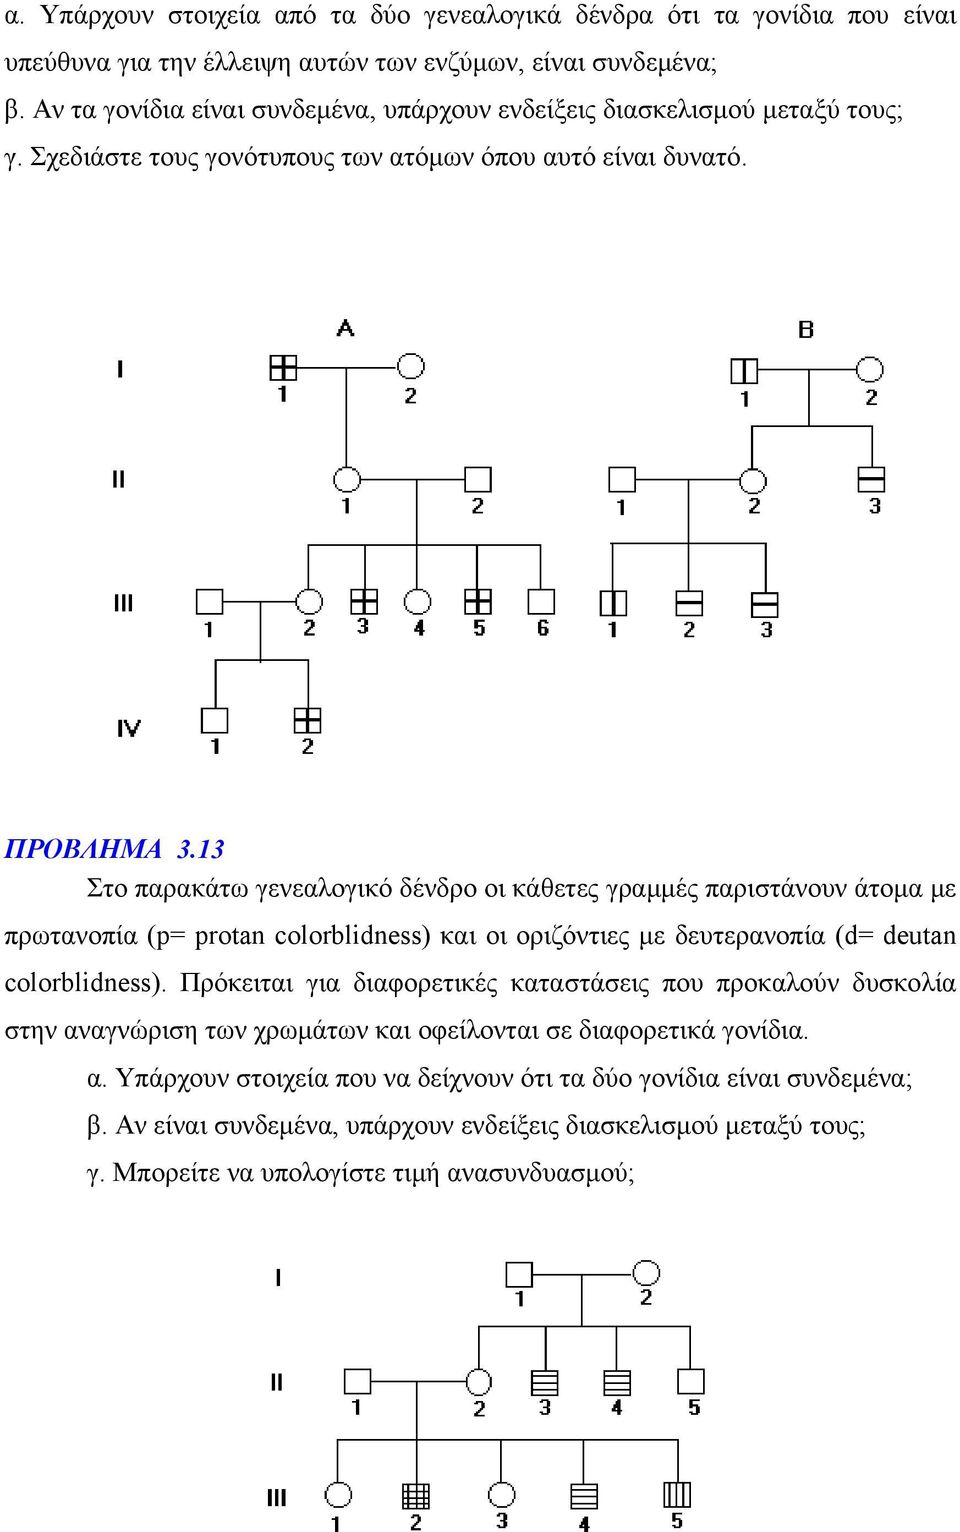 13 Στο παρακάτω γενεαλογικό δένδρο οι κάθετες γραμμές παριστάνουν άτομα με πρωτανοπία (p= protan colorblidness) και οι οριζόντιες με δευτερανοπία (d= deutan colorblidness).